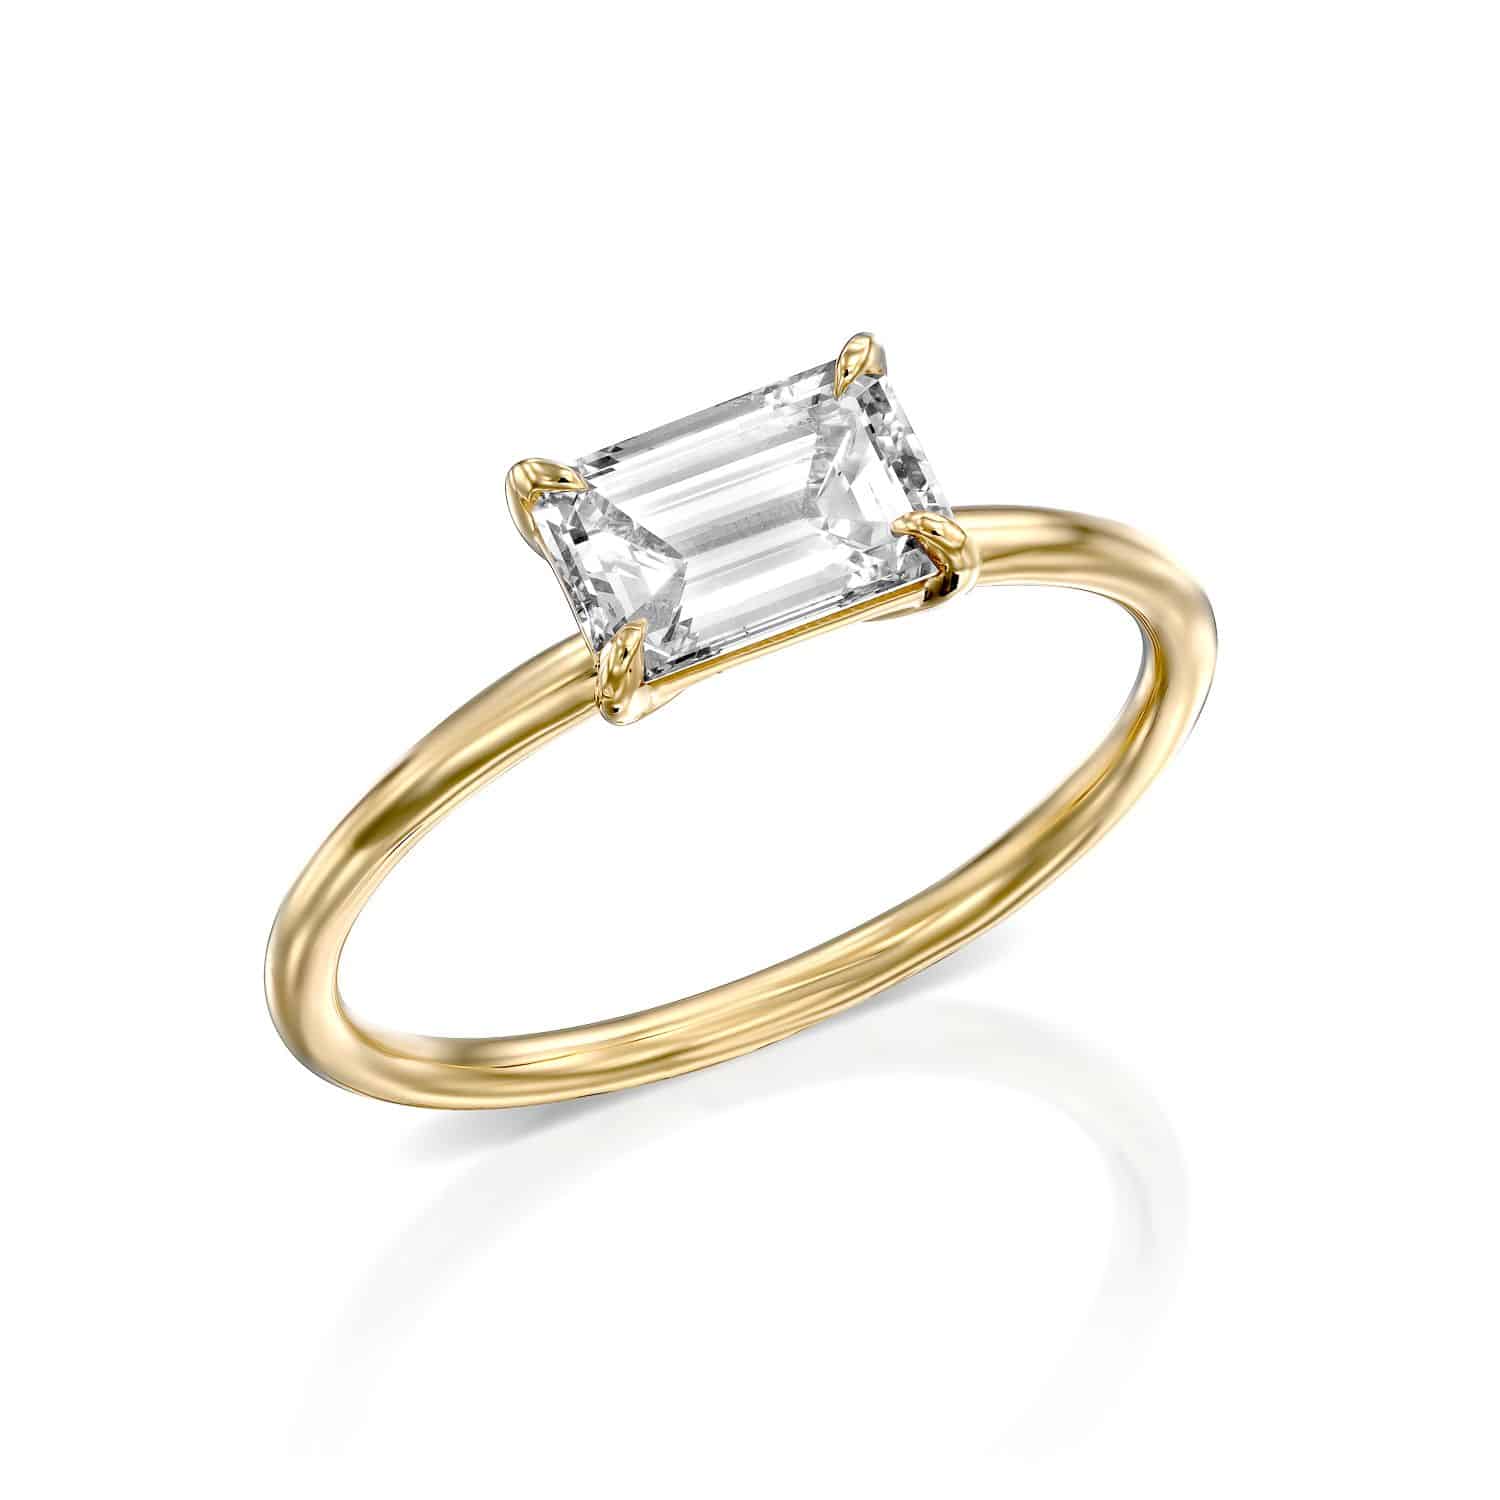 טבעת זהב אלגנטית הכוללת יהלום יחיד בחיתוך אמרלד, מציגה פשטות ותחכום.